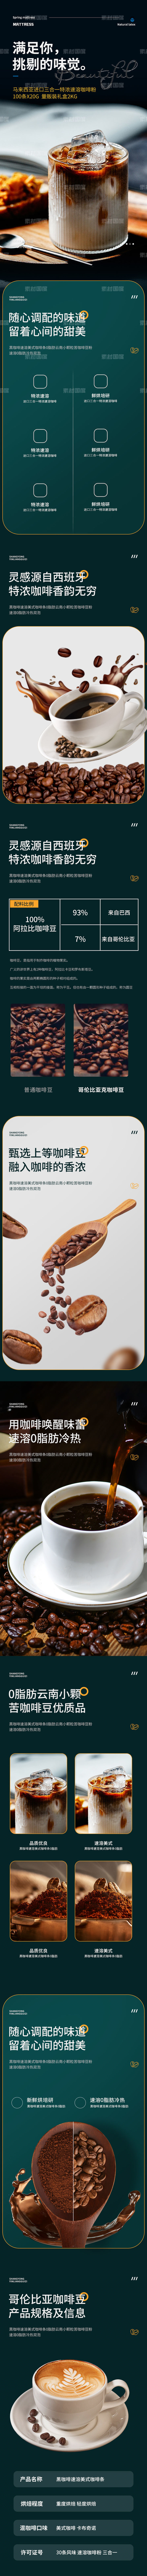 咖啡 咖啡豆 详情页